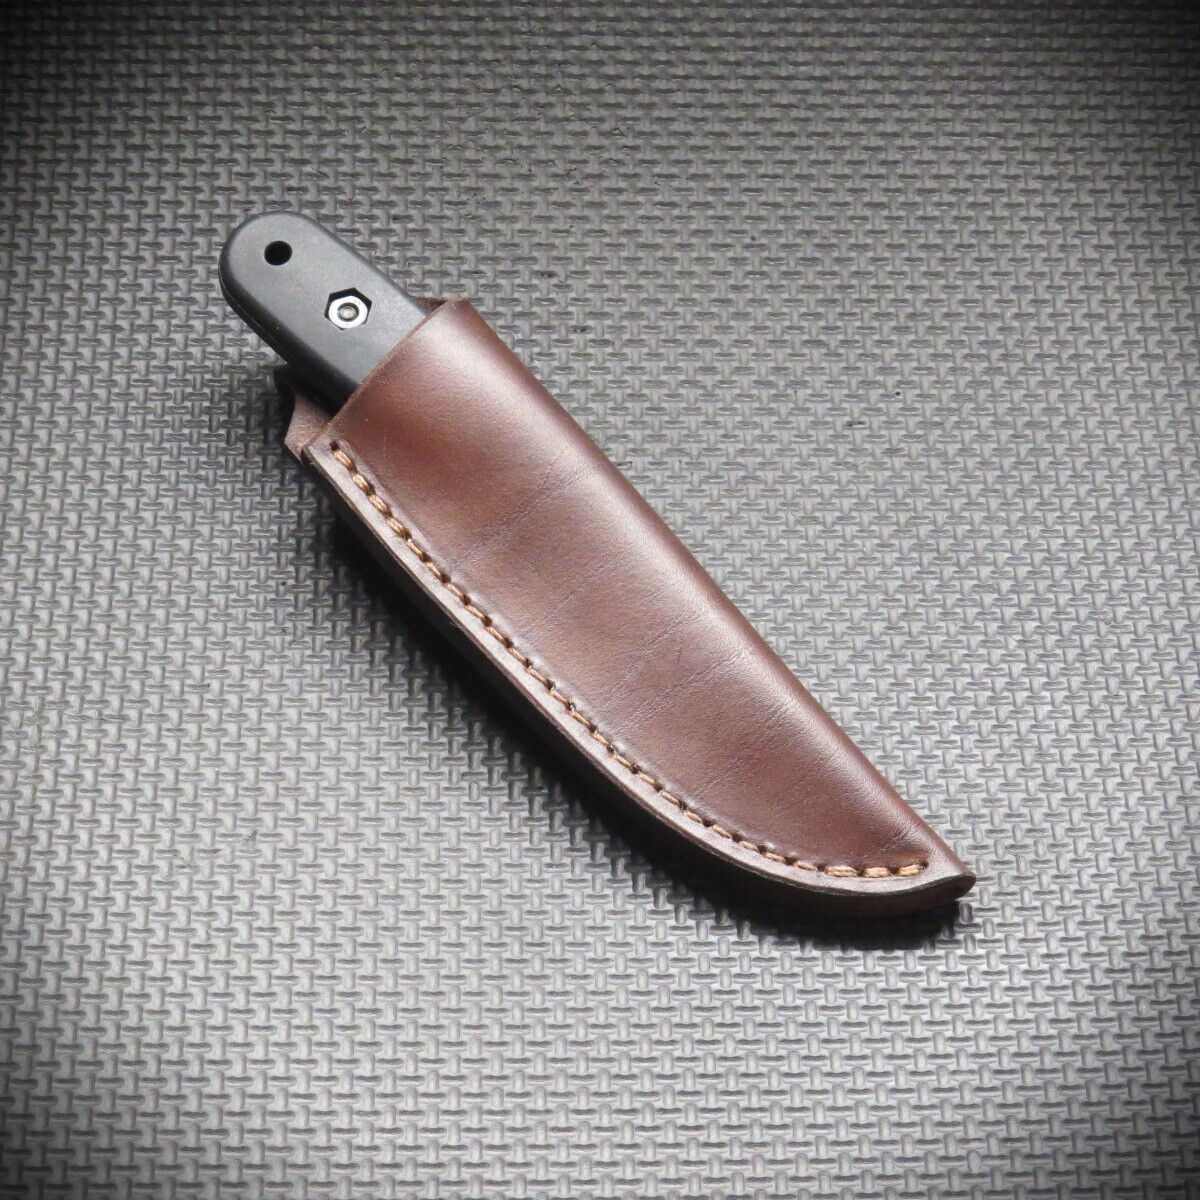 KA-BAR BK11 BK14 BK24 CUSTOM LEATHER KNIFE SHEATH CASE BY CHARLIE CLINE